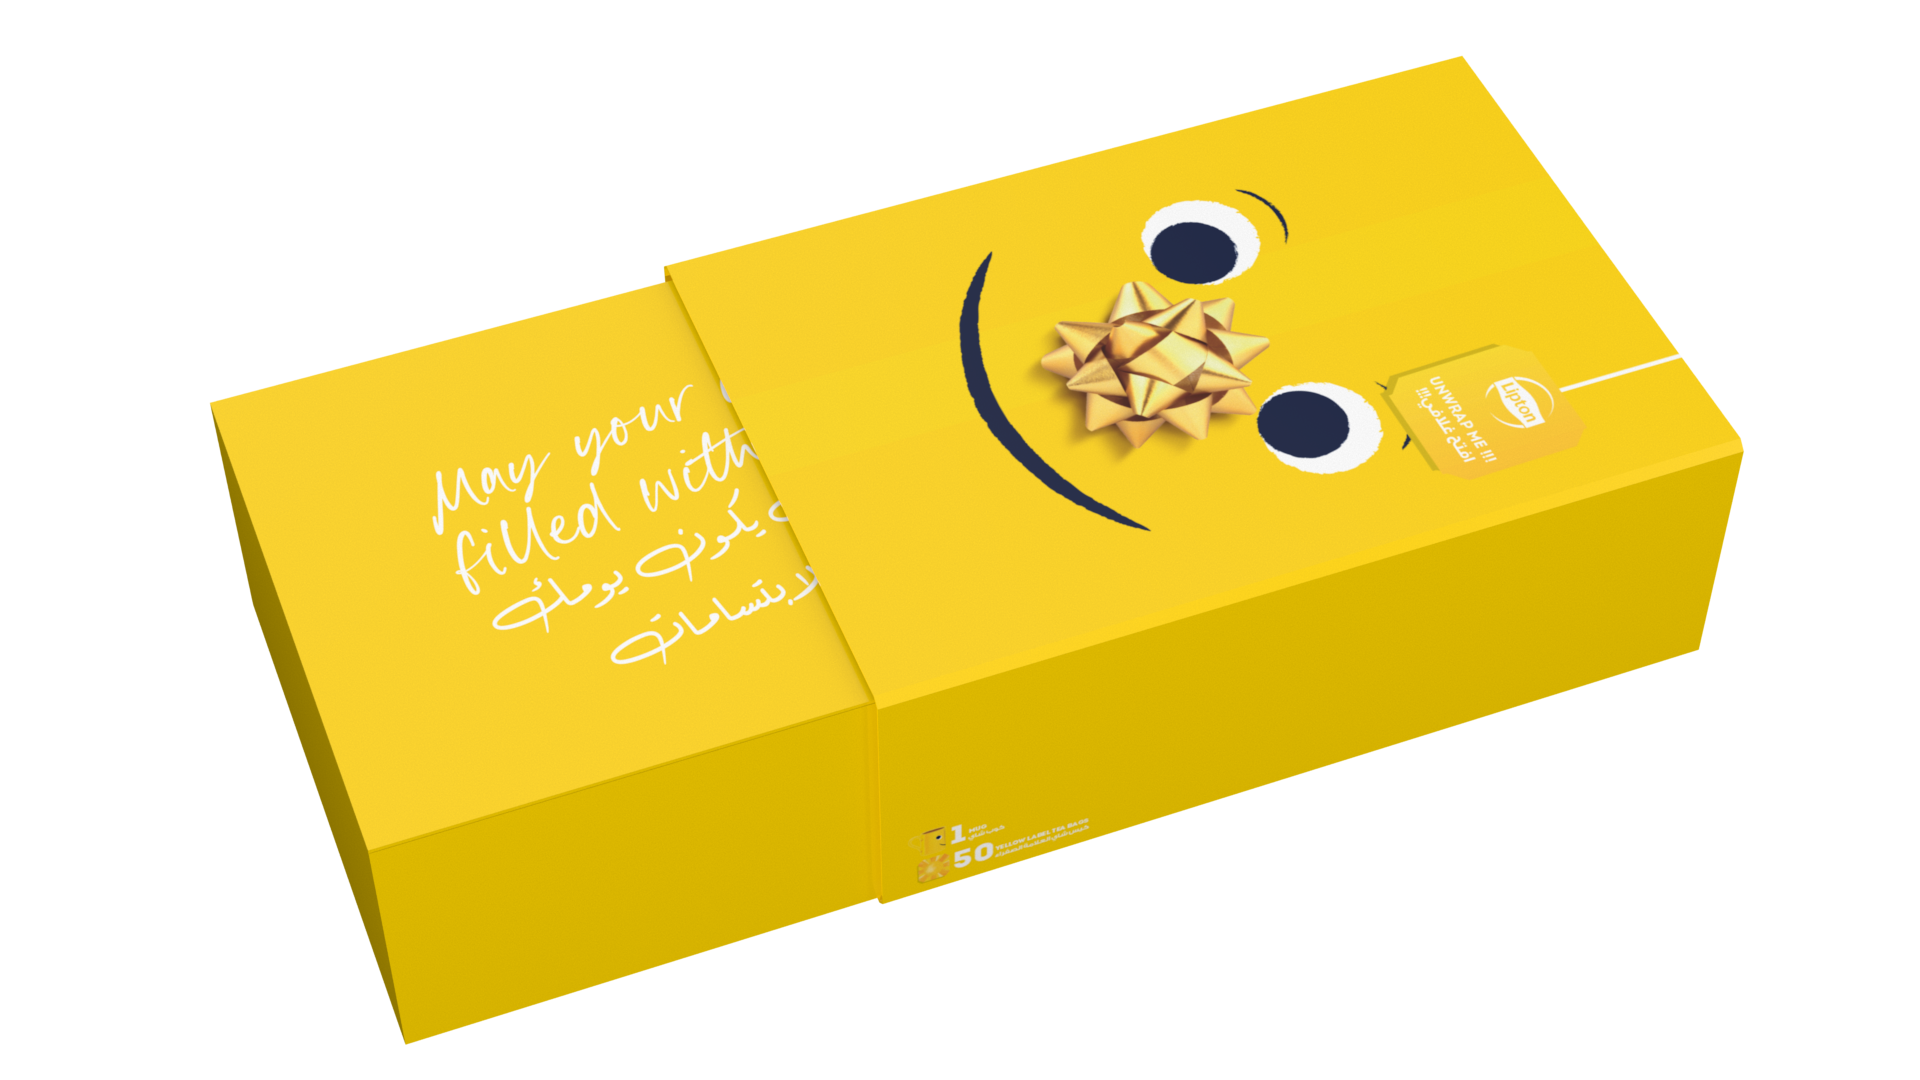 Lipton Yellow Label 50 Tea Bags with Mug Gift Box